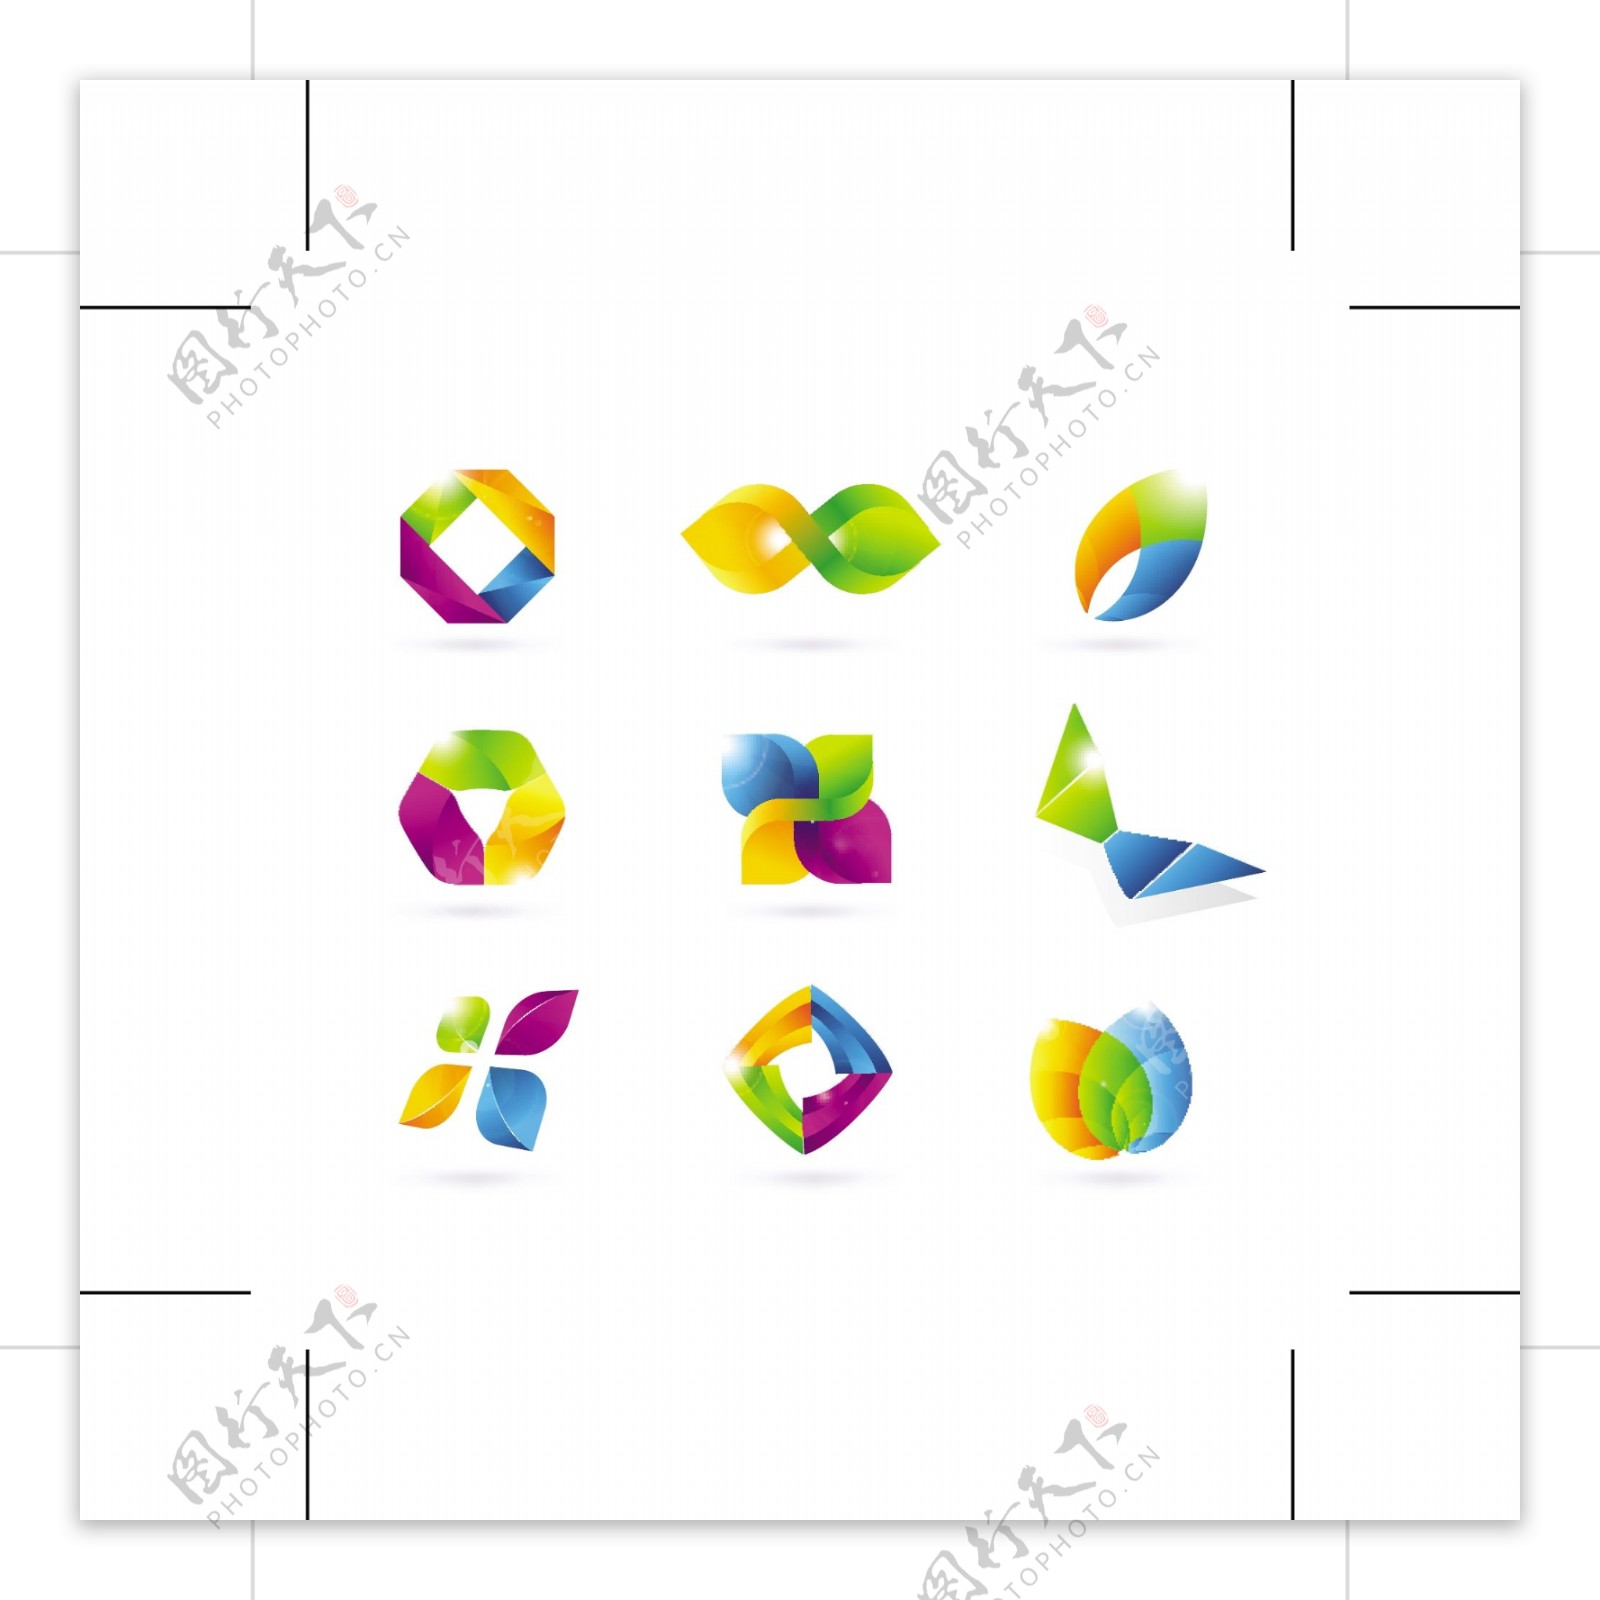 折纸风格图标矢量素材